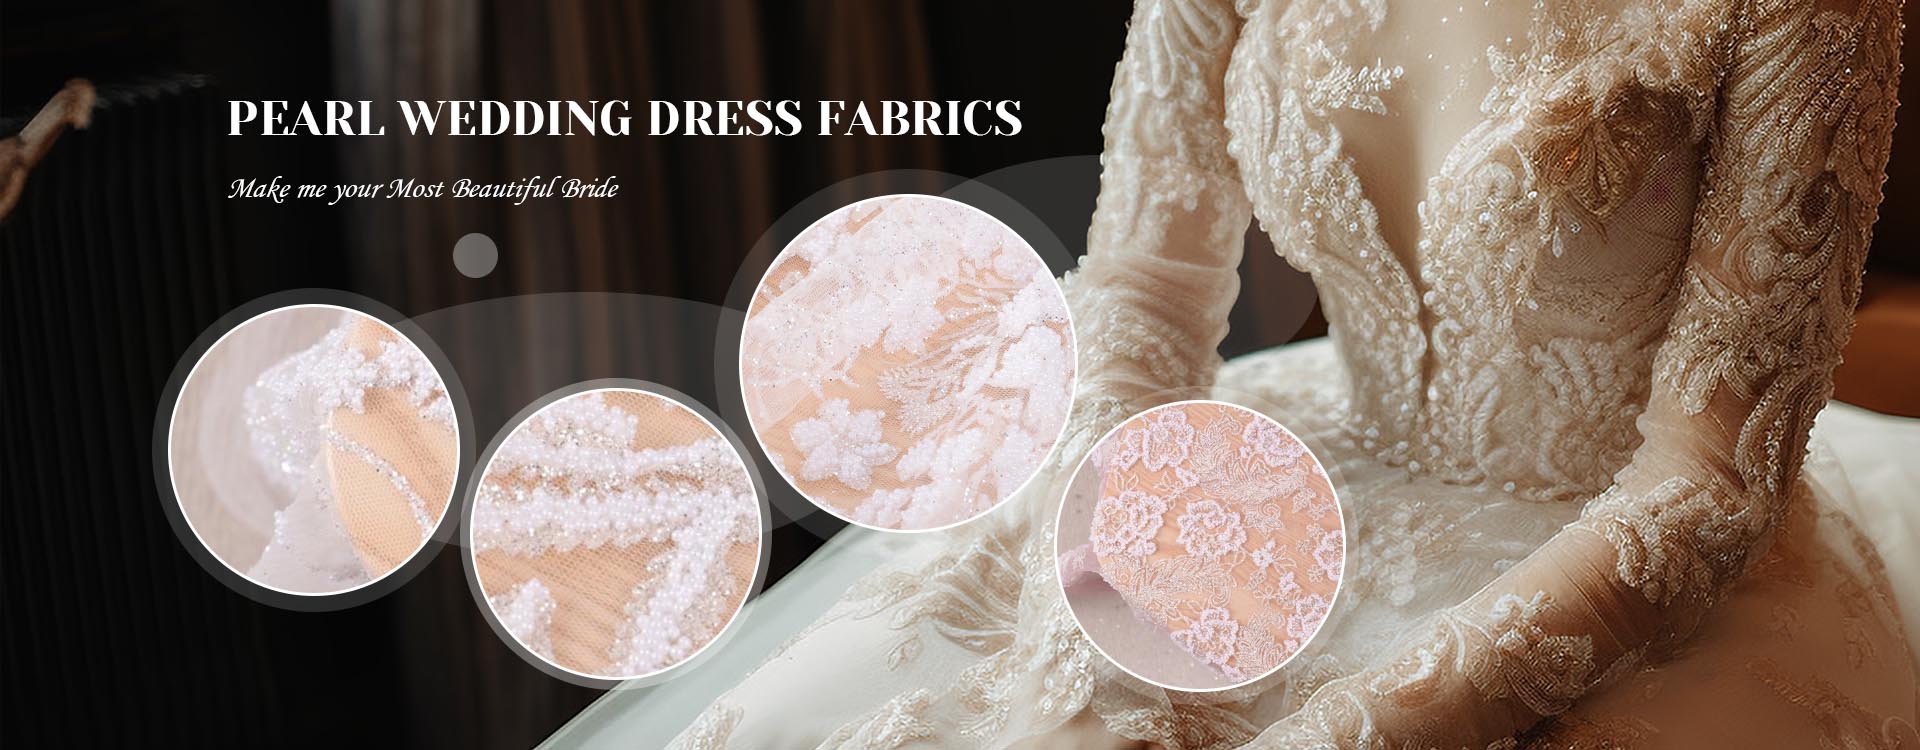 Китай Жемчужные свадебные платья Производители тканей